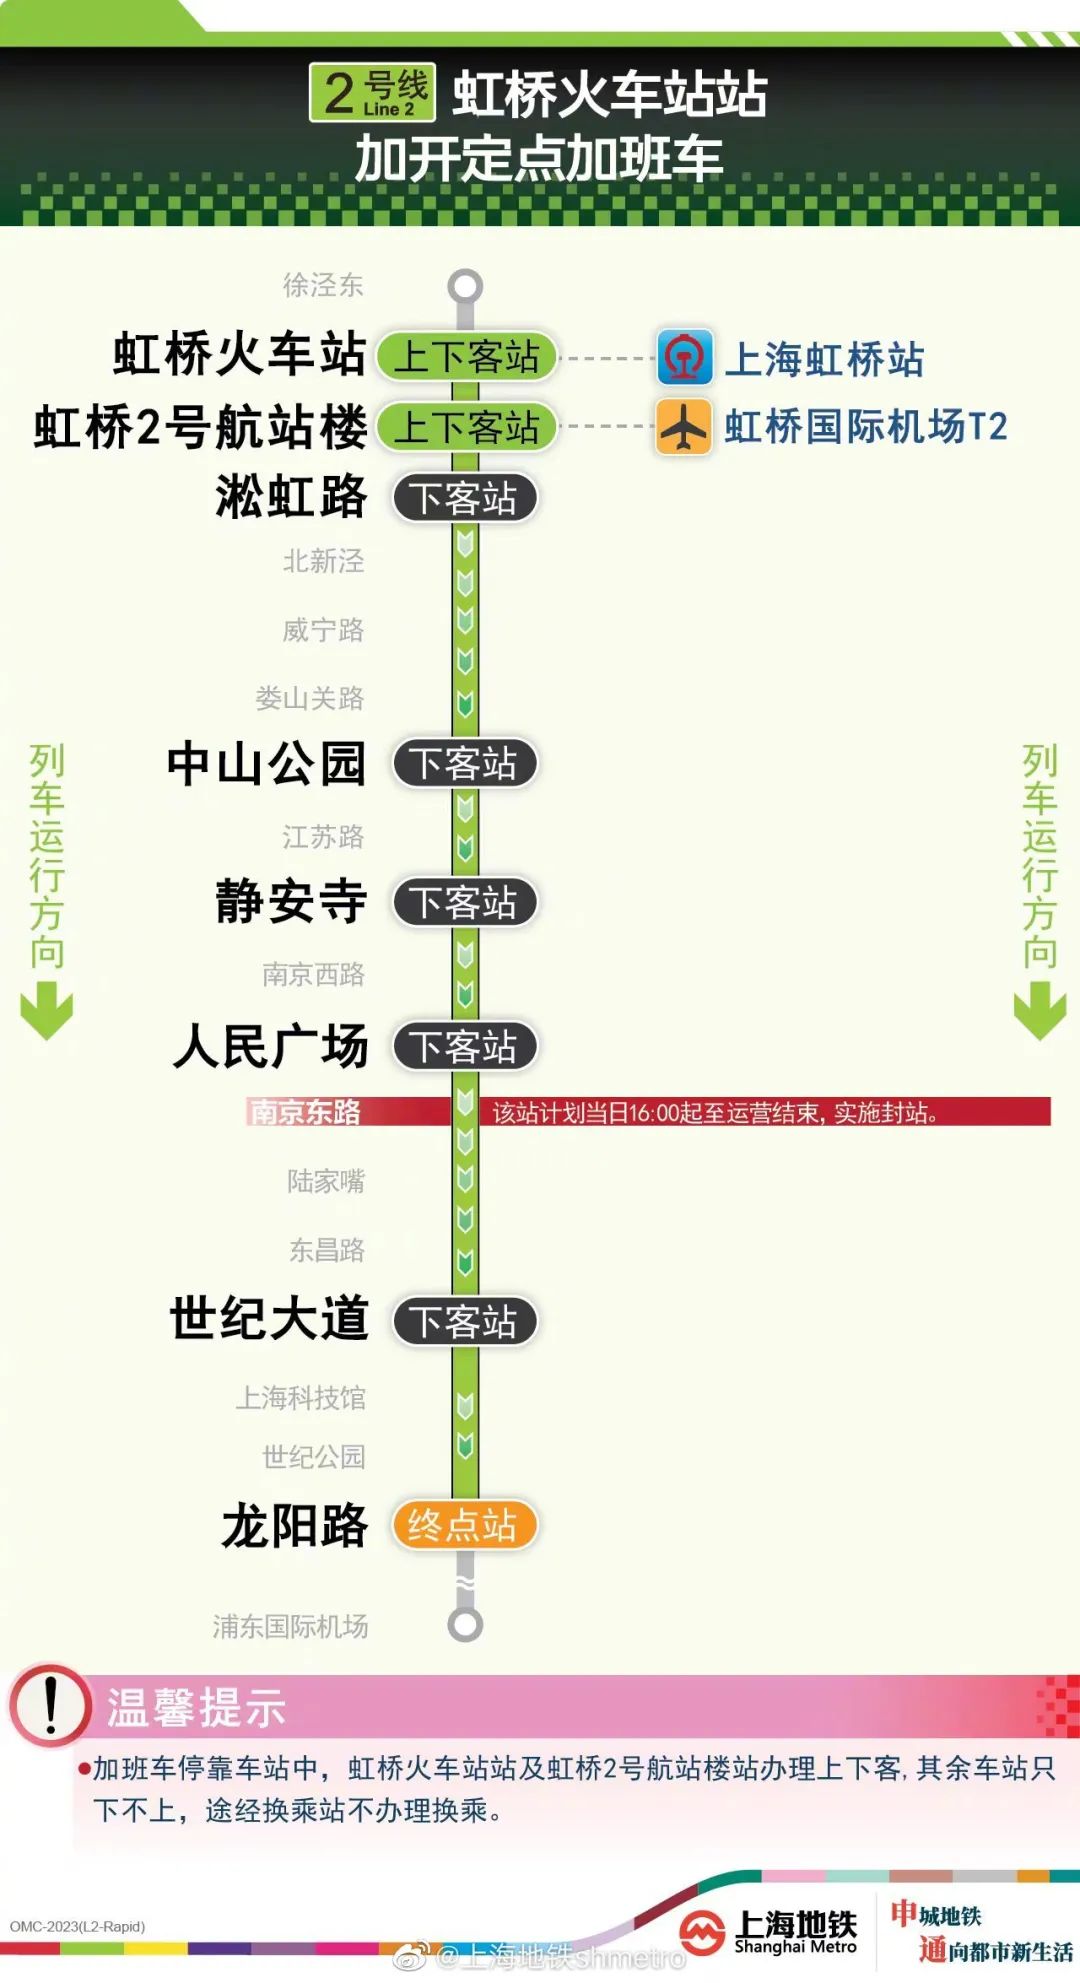 上海地铁2号线10号线虹桥火车站加班车今晚延长运营至次日凌晨